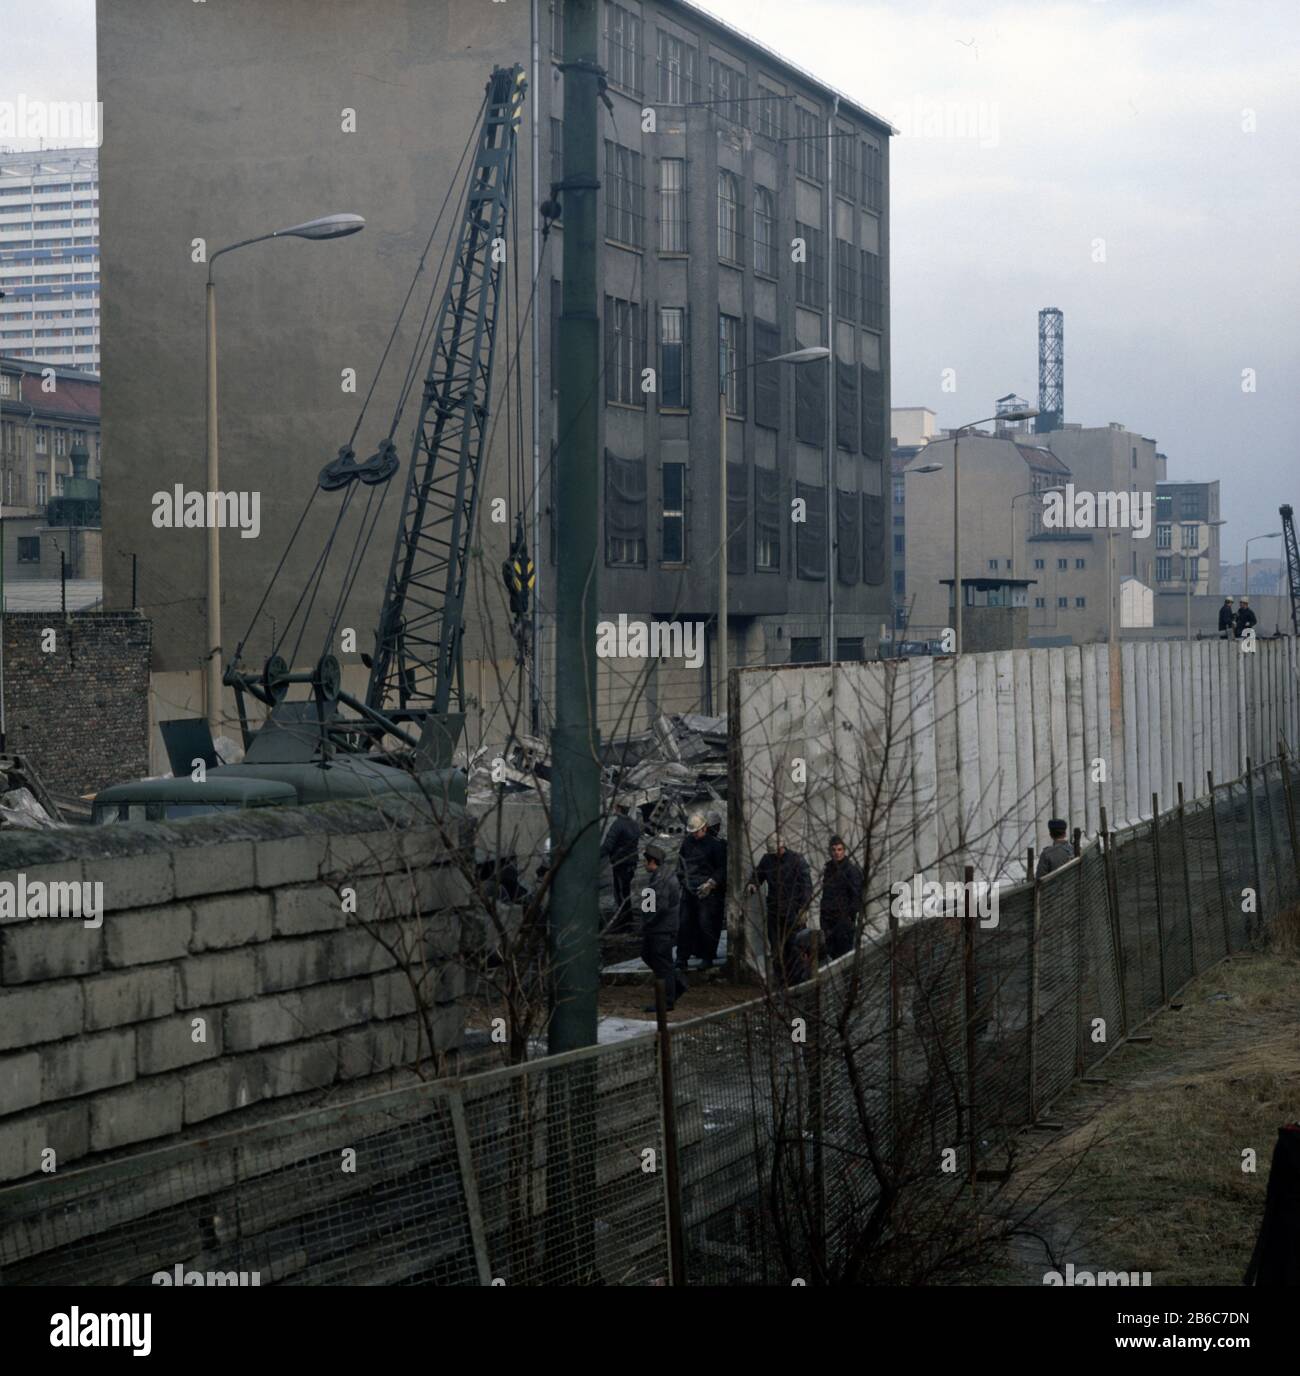 Ausbau der Grenzmauer – Zimmerstraße / Charlottenstraße Sektorengrenze Mitte / Kreuzberg Berlin Oktober 1976 - ampliamento del muro di confine Berlino 1976 Foto Stock